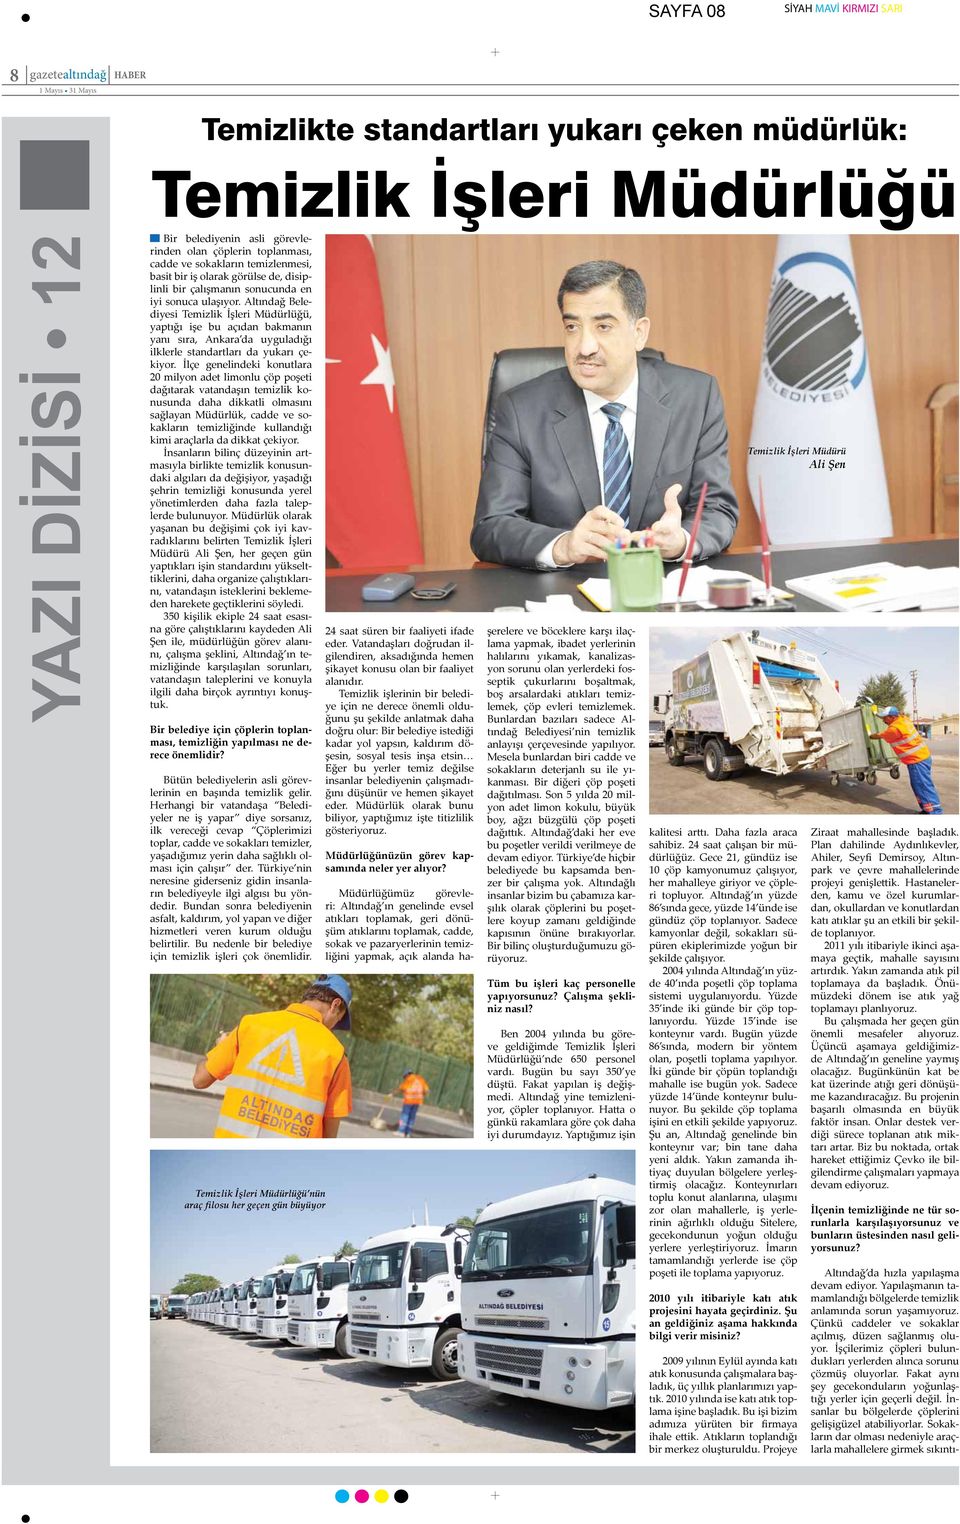 Altındağ Belediyesi Temizlik İşleri Müdürlüğü, yaptığı işe bu açıdan bakmanın yanı sıra, Ankara da uyguladığı ilklerle standartları da yukarı çekiyor.